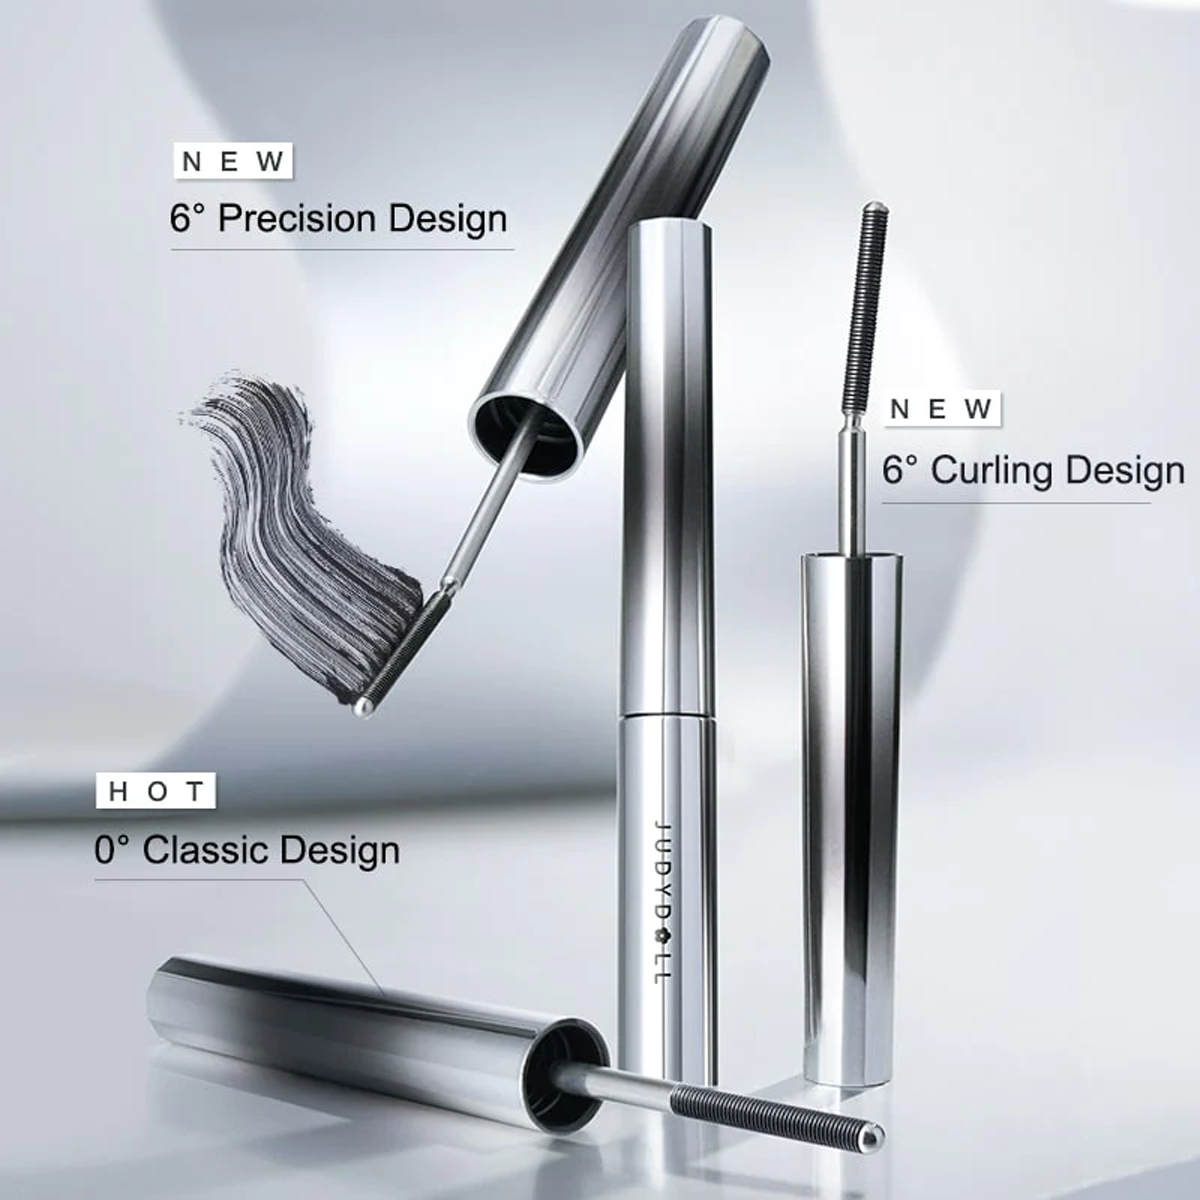 3D Curling Eyelash Iron Mascara | Eye Makeup Cosmetic